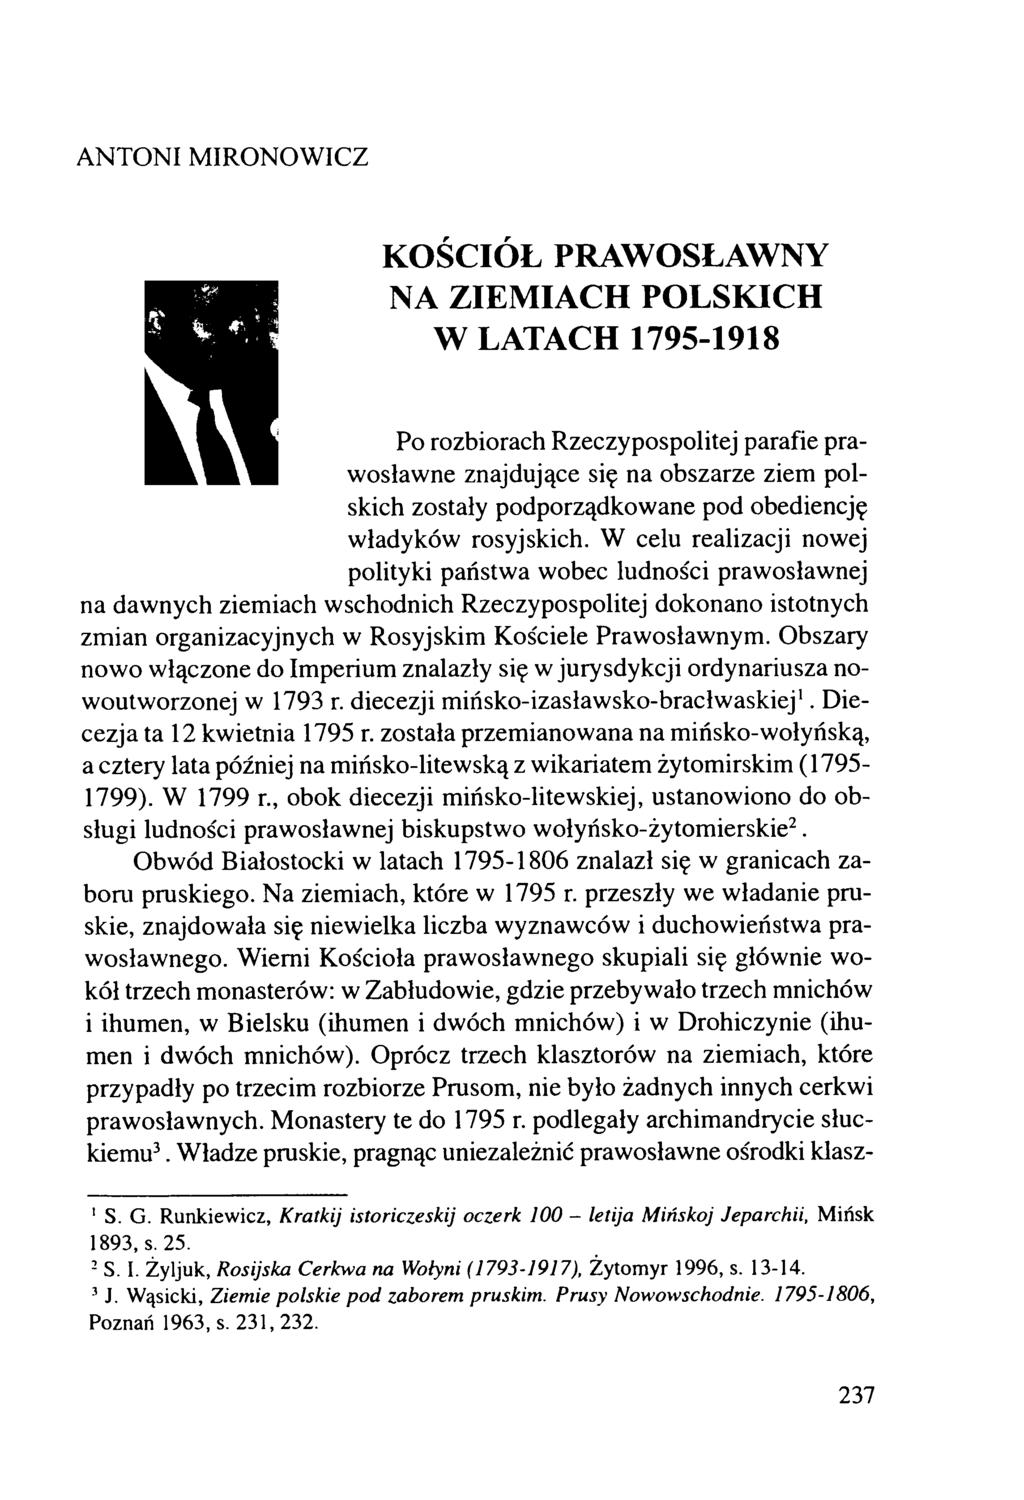 ANTONI MIRONOW ICZ KOŚCIÓŁ PRAWOSŁAWNY NA ZIEMIACH POLSKICH W LATACH 1795-1918 Po rozbiorach Rzeczypospolitej parafie praw osławne znajdujące się na obszarze ziem polskich zostały podporządkowane pod